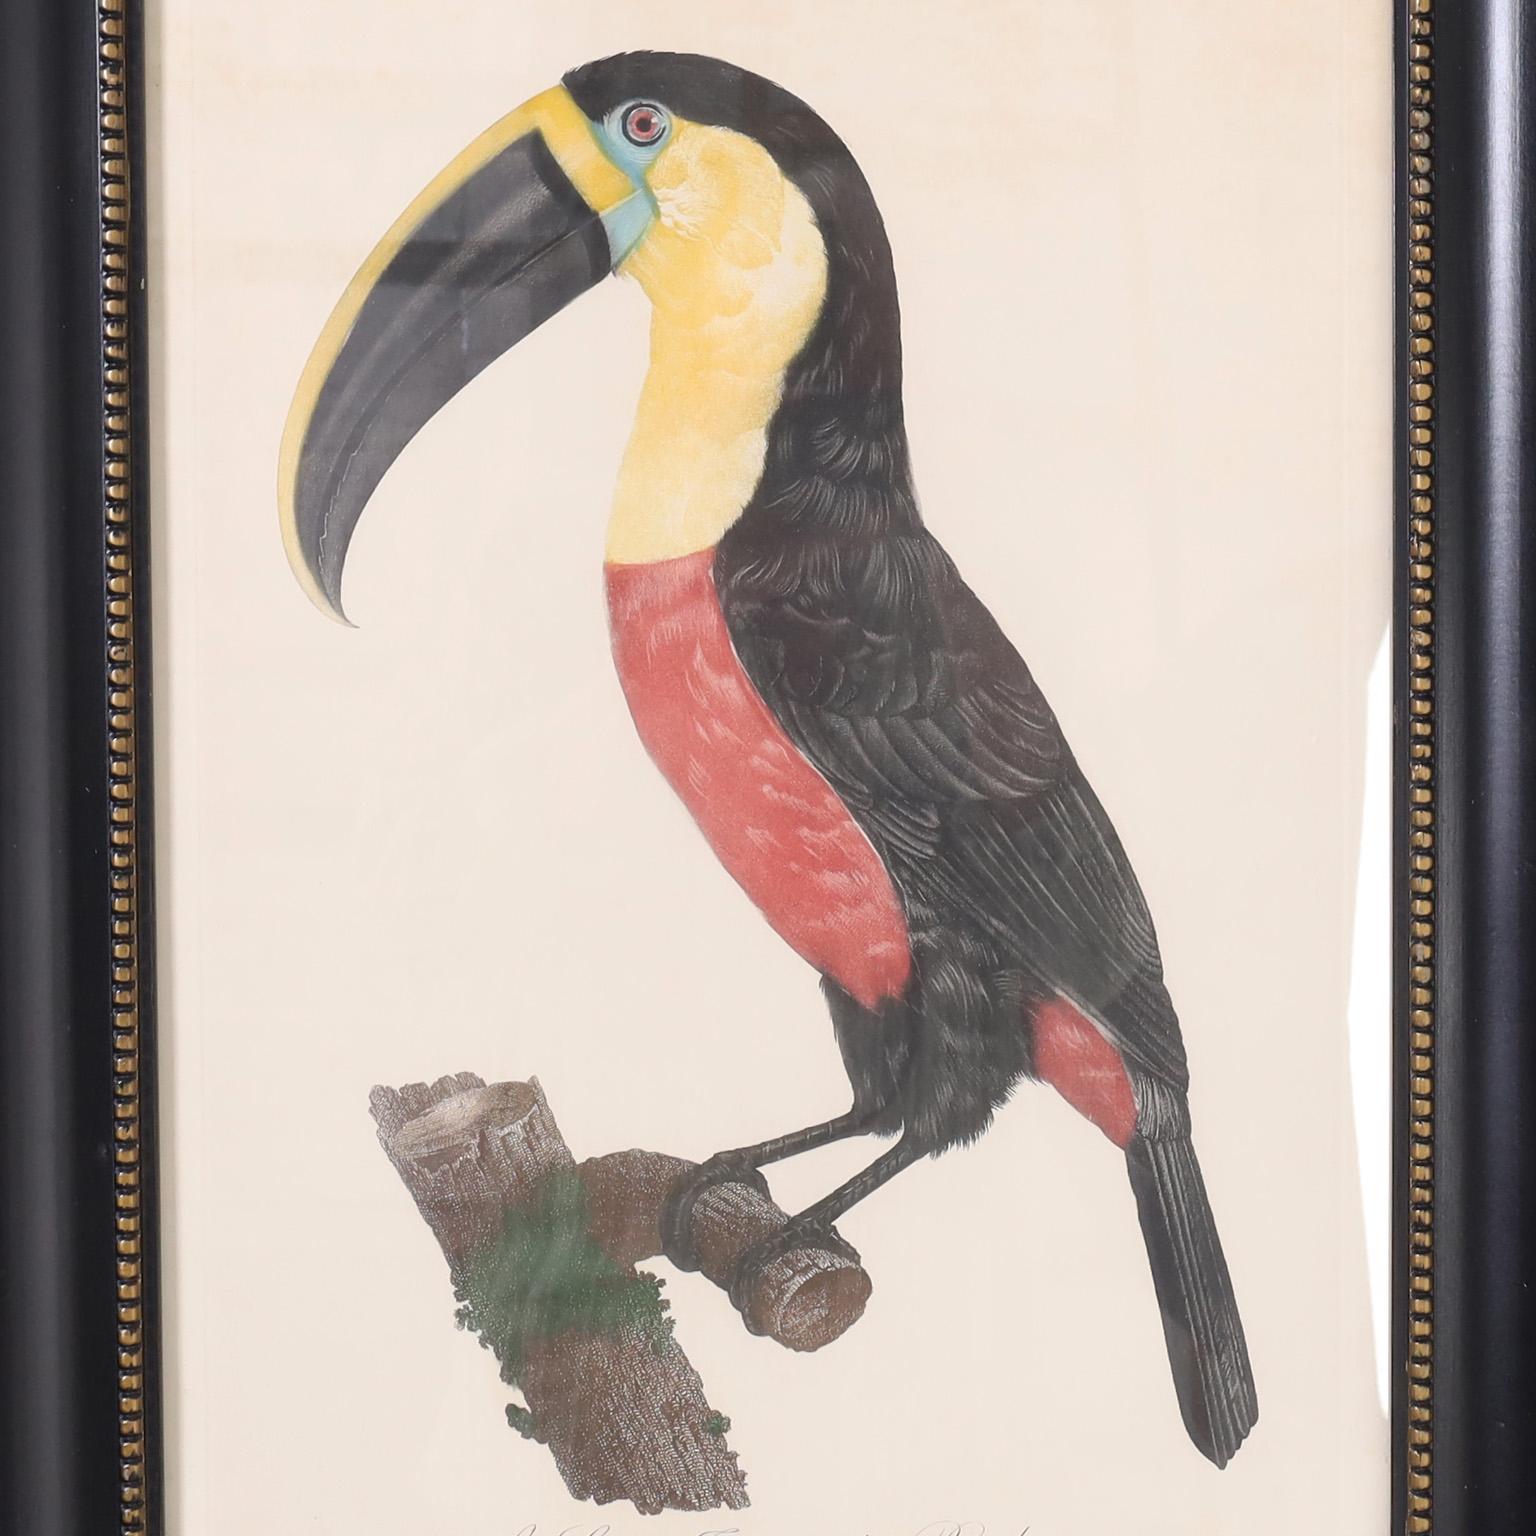 Saisissante gravure du 19e siècle d'un toucan coloré à la main par l'artiste et naturaliste Jacques Barraband (1767-1809), publiée pour la première fois à Paris en 1801. Présenté sous verre dans un cadre en bois laqué aux reflets perlés.